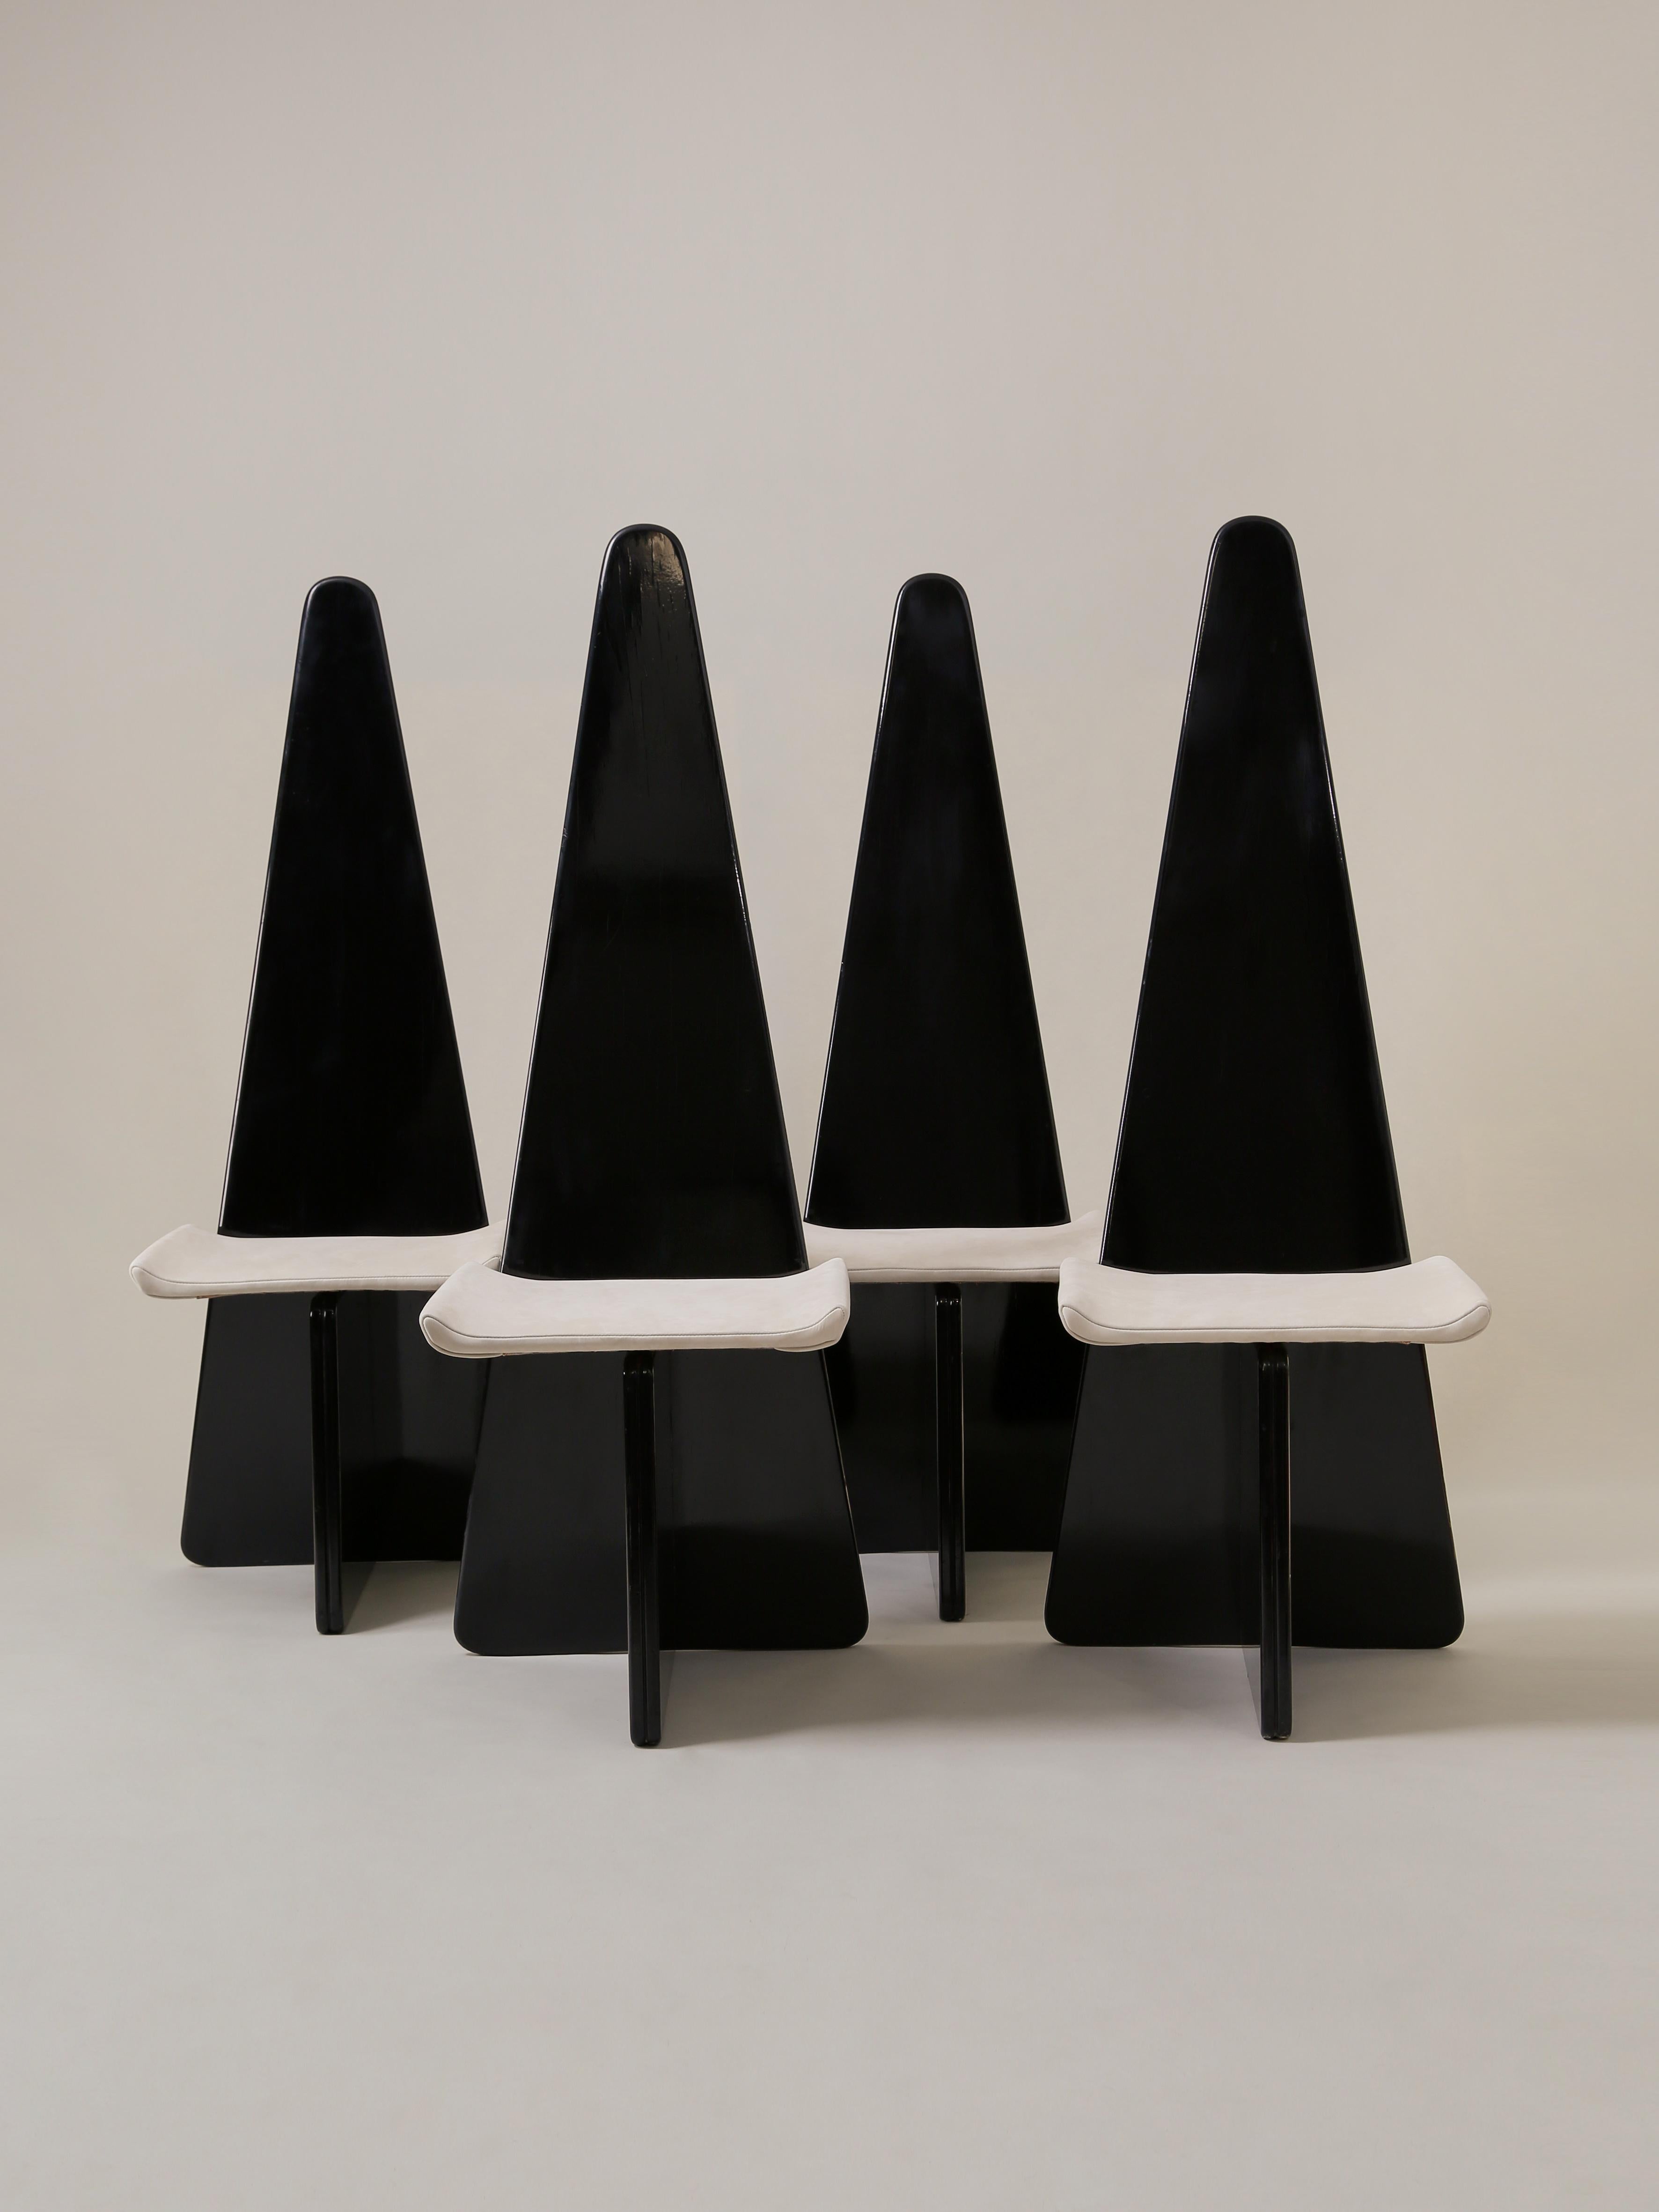 Cet ensemble de chaises modernistes saisissantes, dans le style de Claudio Salocchi, présente une base en bois laqué noir et un siège nouvellement remeublé en daim osseux. Les chaises Sormani Edition, estampillées SORMANI, datent des années 1970 en